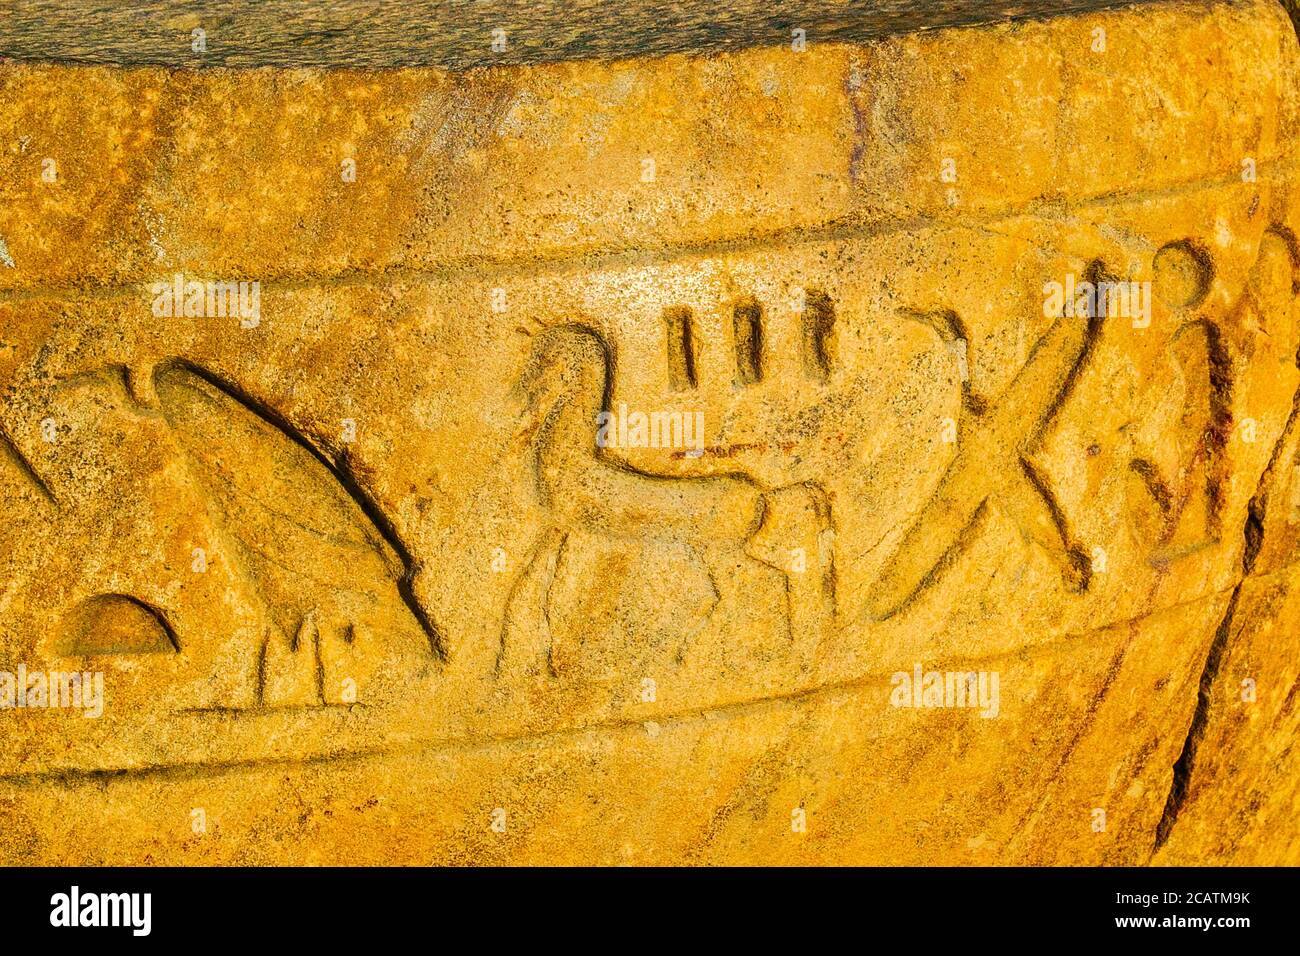 Égypte, Delta du Nil, Tanis, objets exposés près de la maison de mission : partie d'une colonne, avec hiéroglyphes, y compris le signe d'un cheval. Banque D'Images